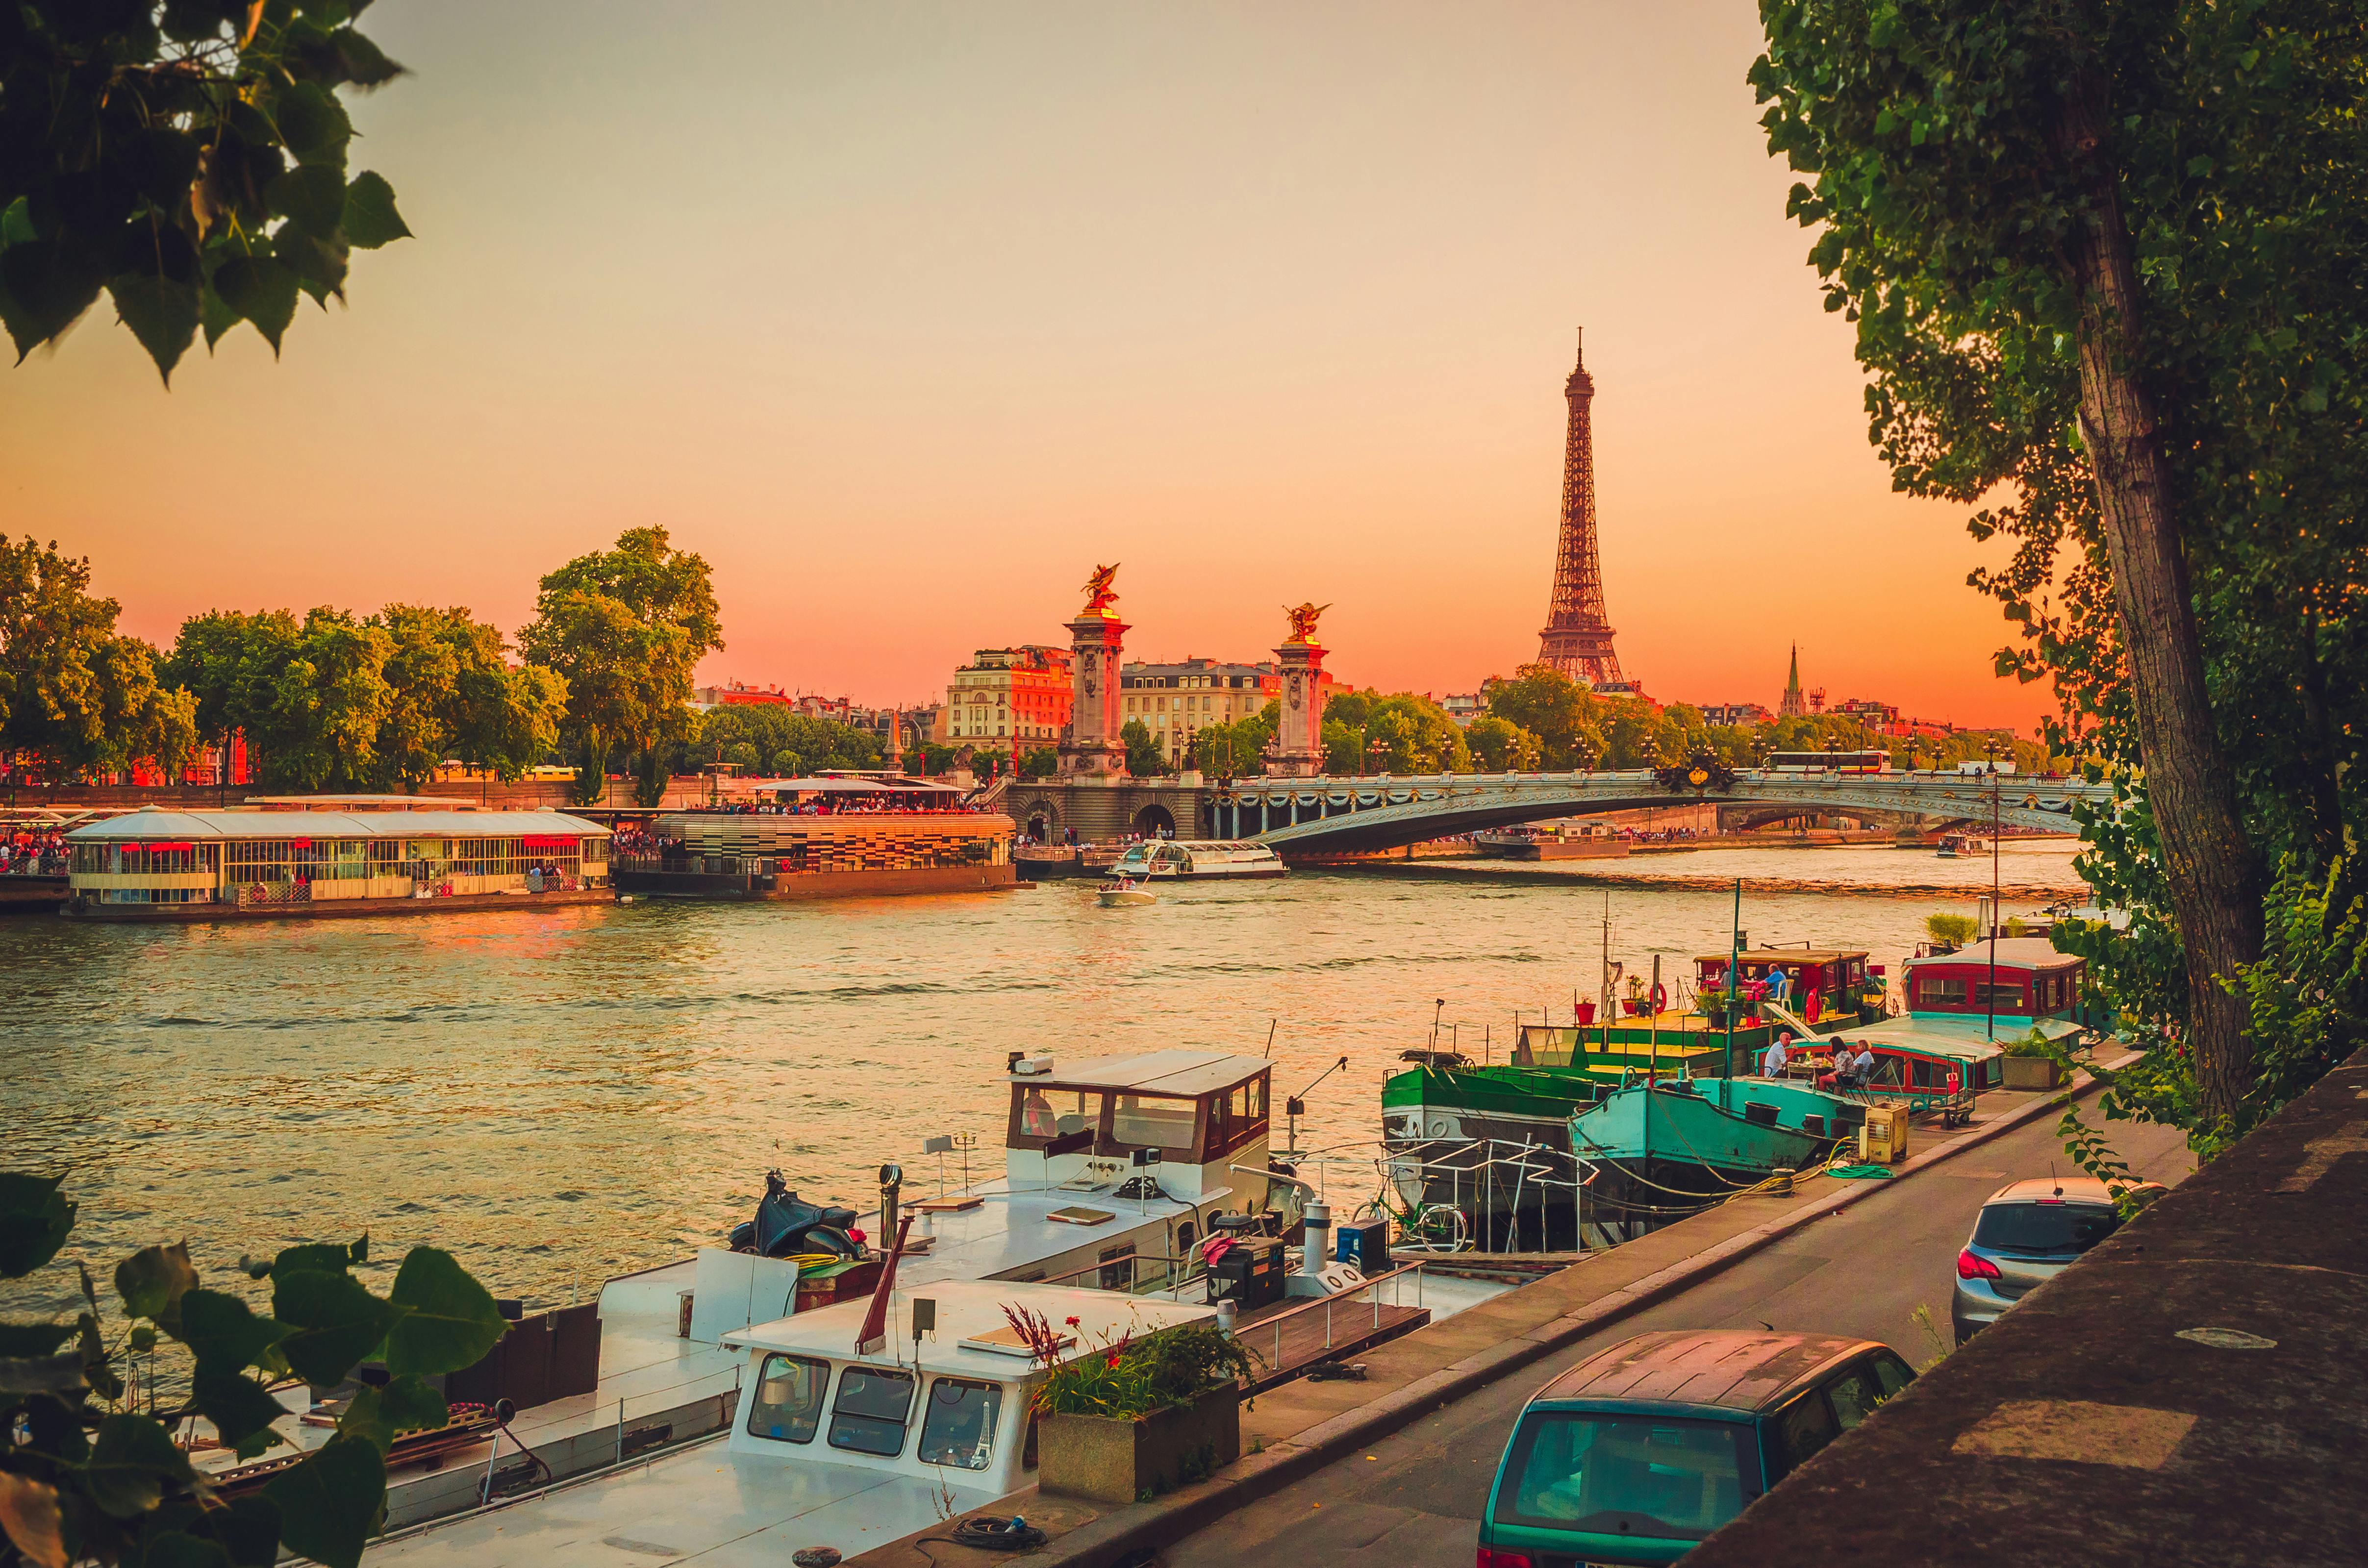 Dîner croisière romantique sur la Seine